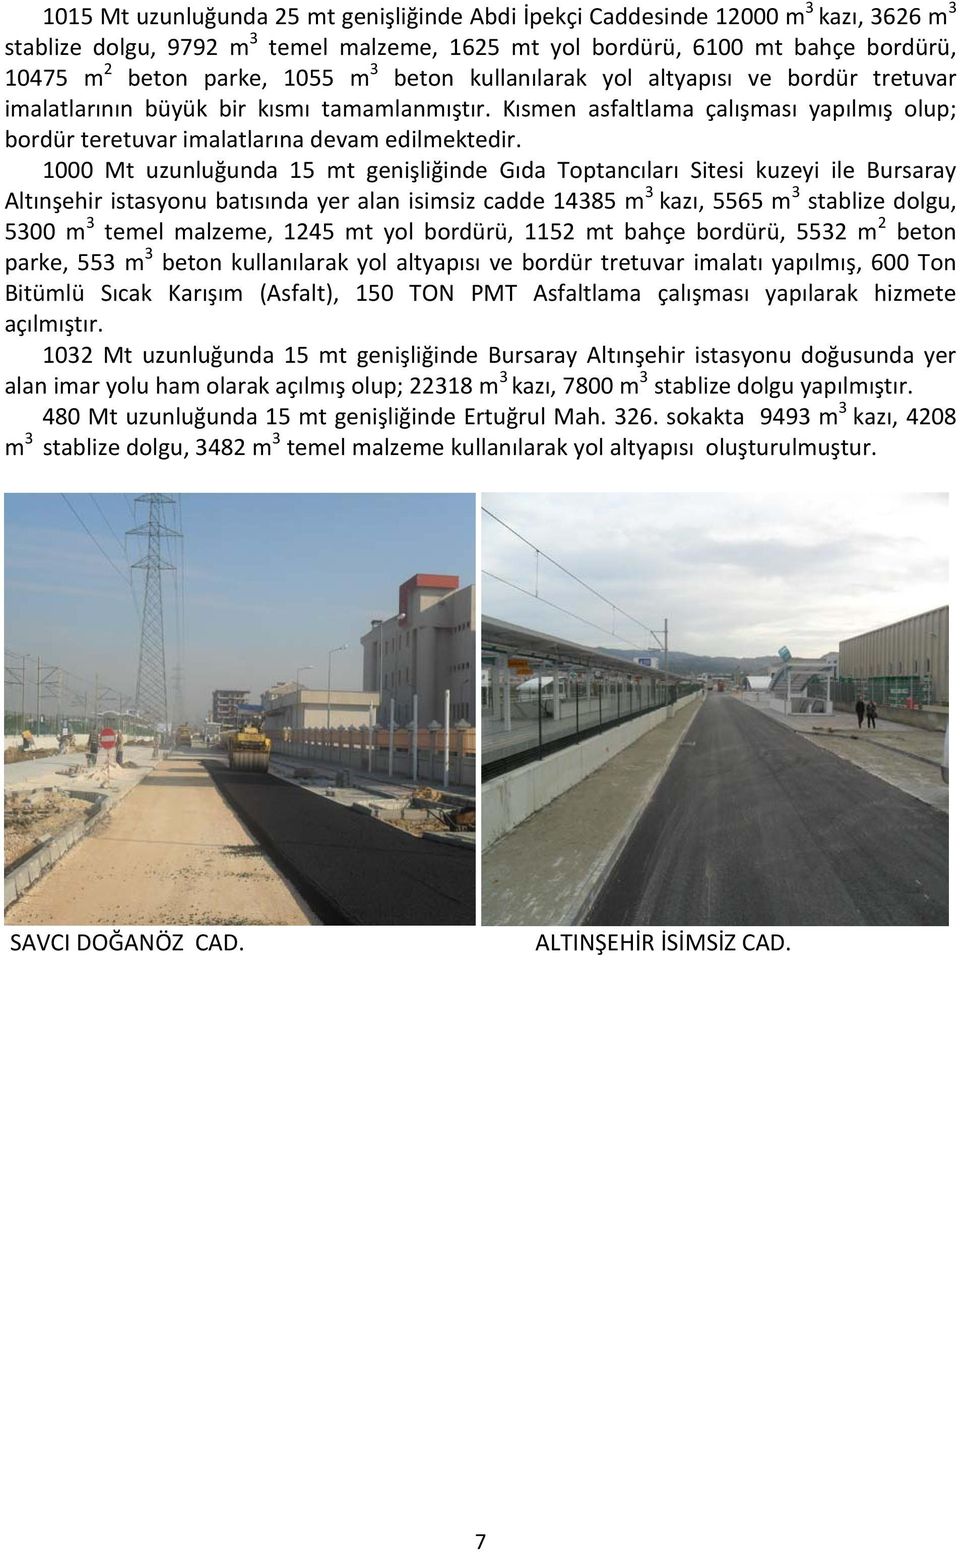 1000 Mt uzunluğunda 15 mt genişliğinde Gıda Toptancıları Sitesi kuzeyi ile Bursaray Altınşehir istasyonu batısında yer alan isimsiz cadde 14385 m 3 kazı, 5565 m 3 stablize dolgu, 5300 m 3 temel